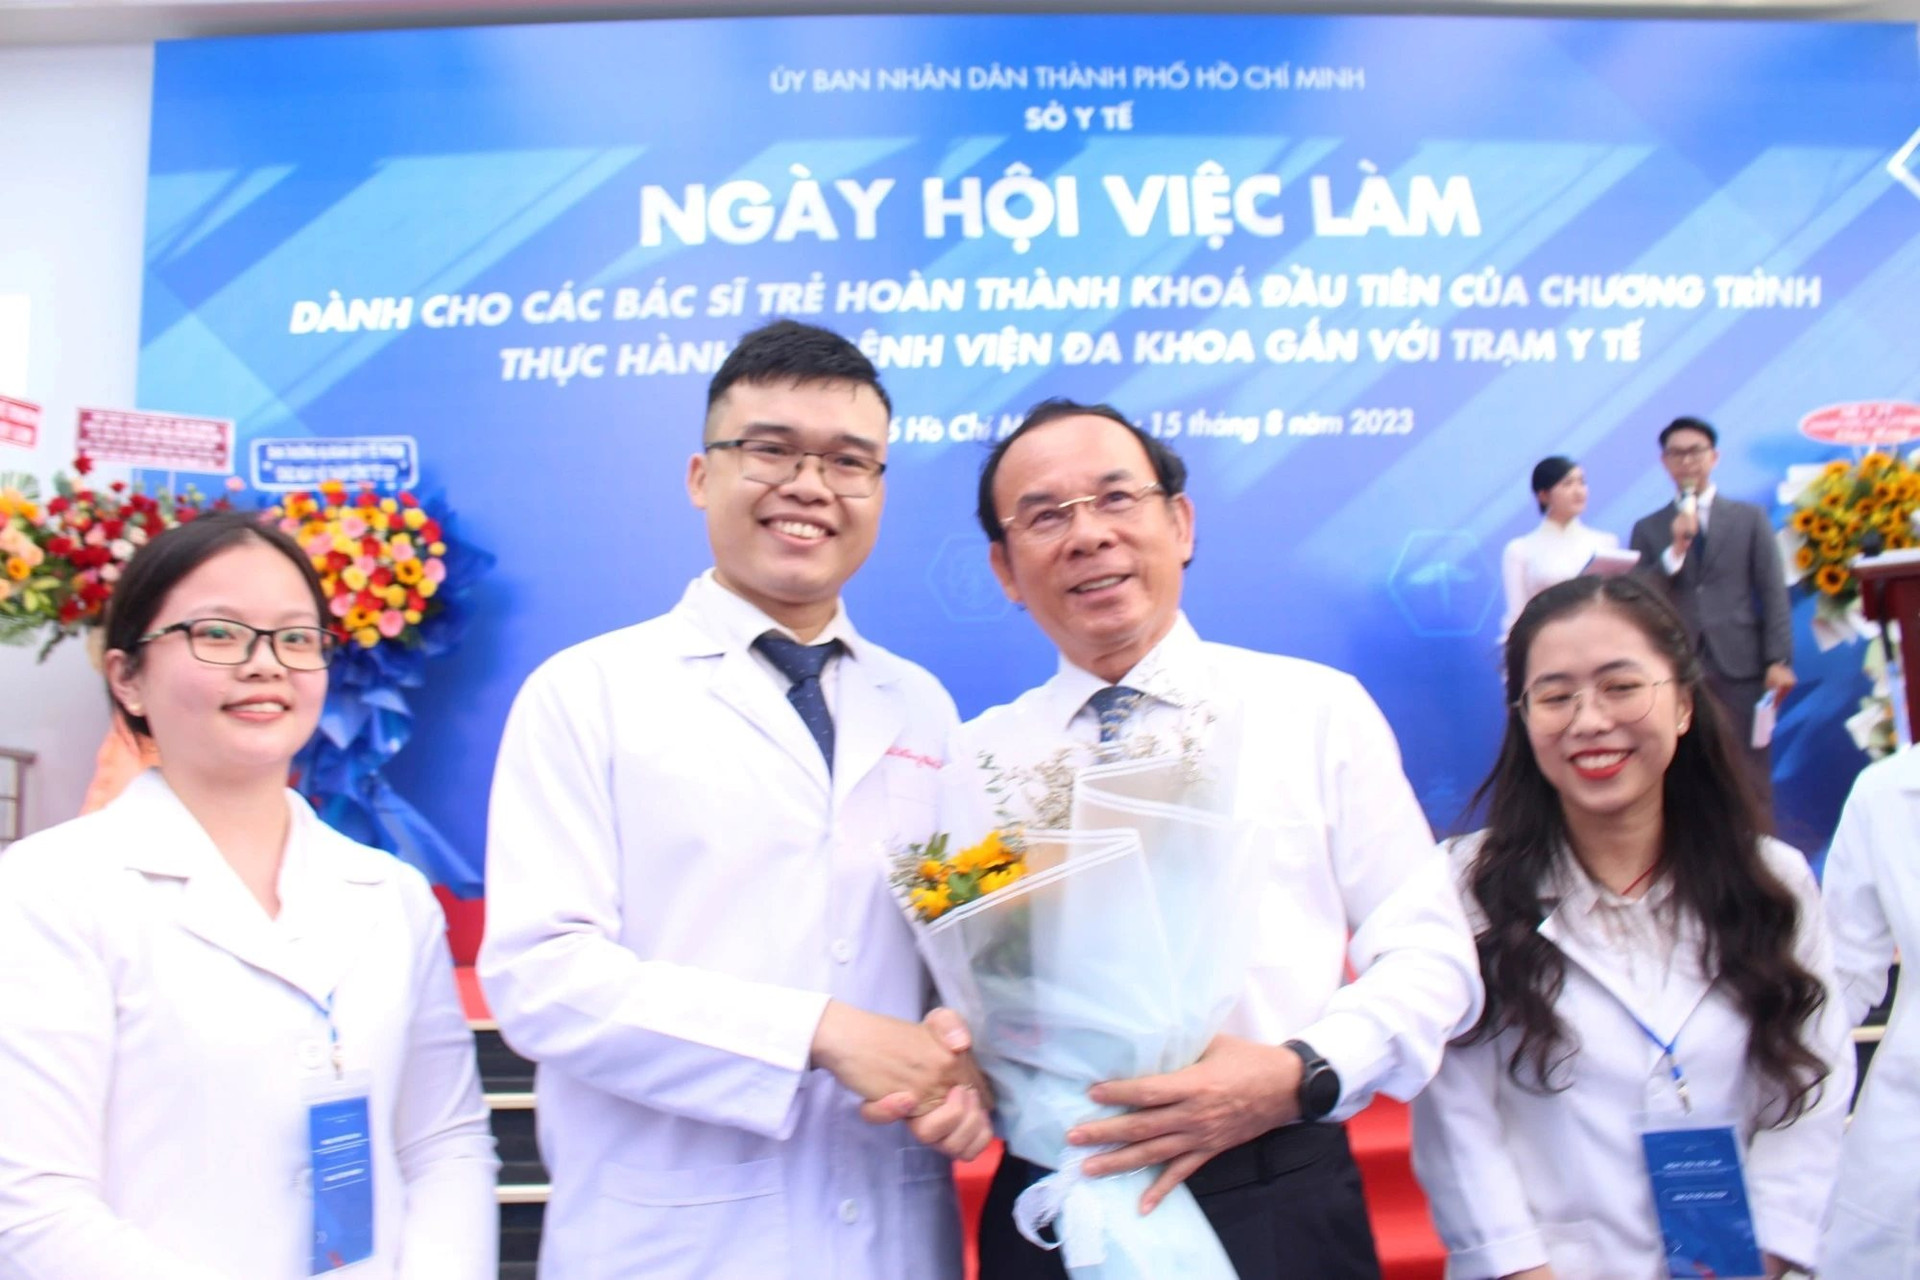 Thành phố Hồ Chí Minh: 7 hoạt động y tế nổi bật hướng về cơ sở năm 2023